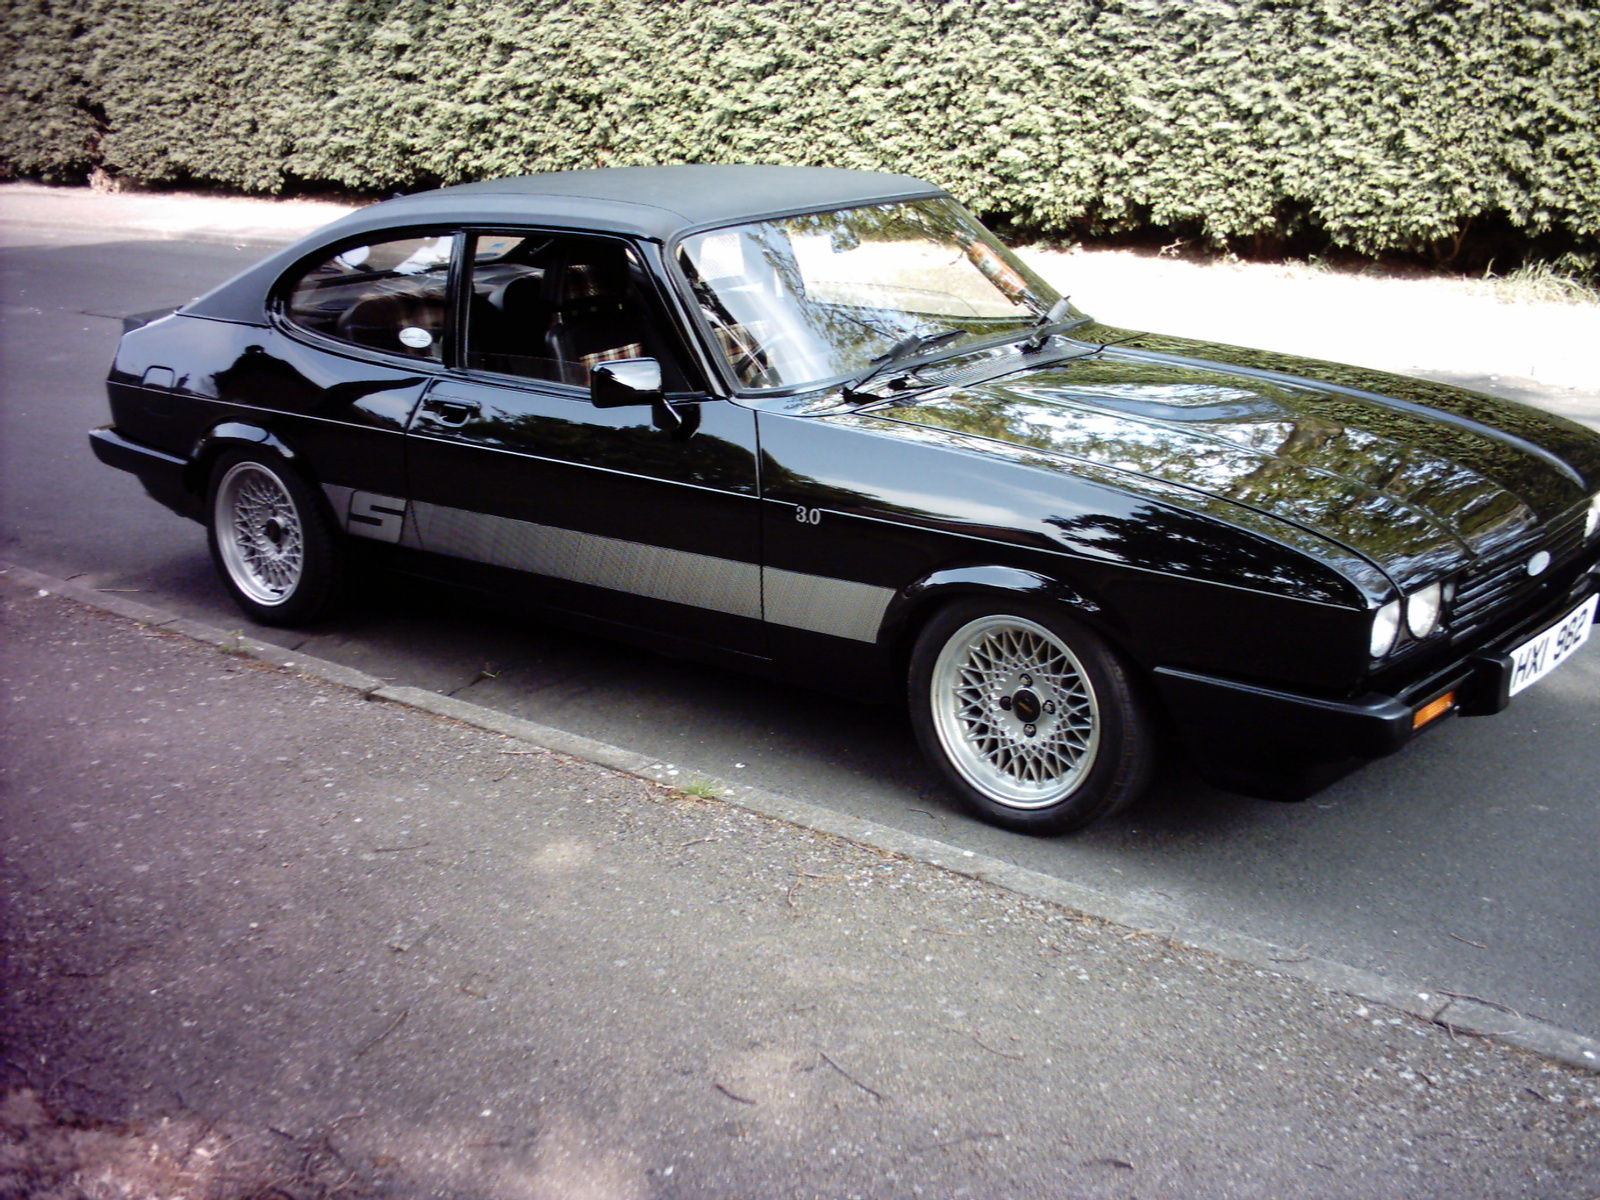 1973-ford-capri-and-post-1973-ford-capri-mycelularorg_2a21e.jpg